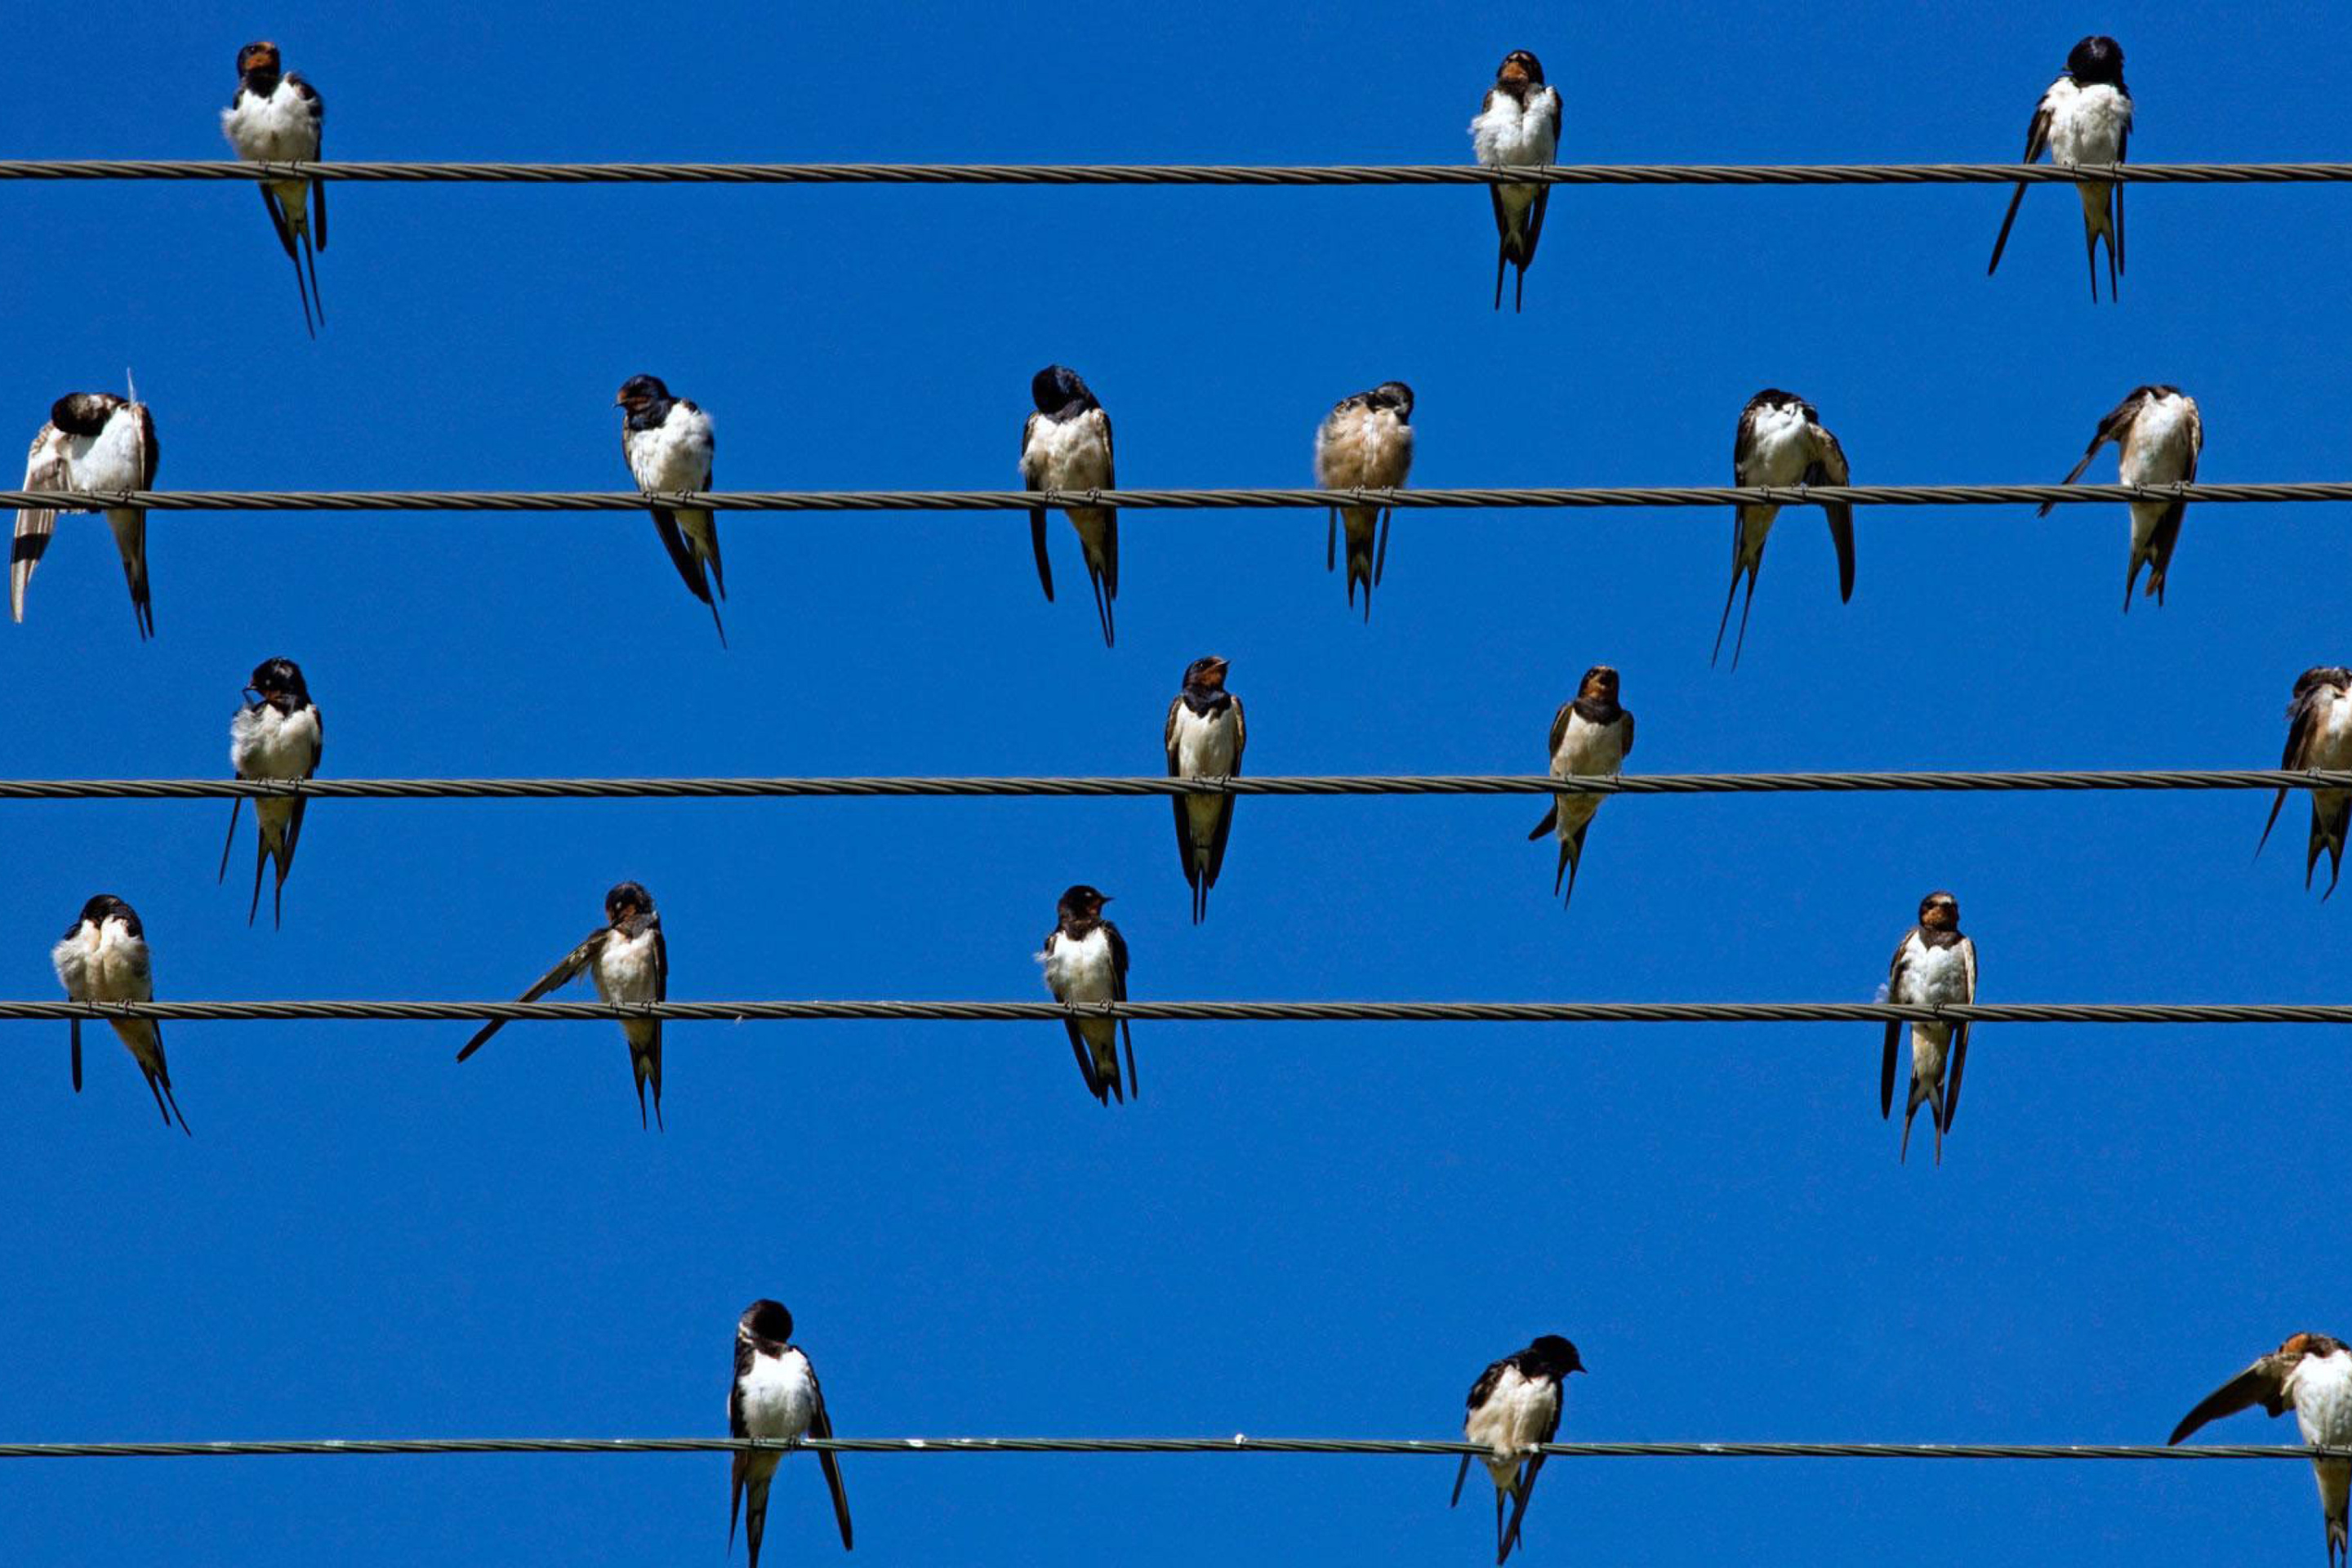 Forms birds. Птицы сидят на проводах. Стая ласточек. Ласточки на проводах. Птички на проводе.